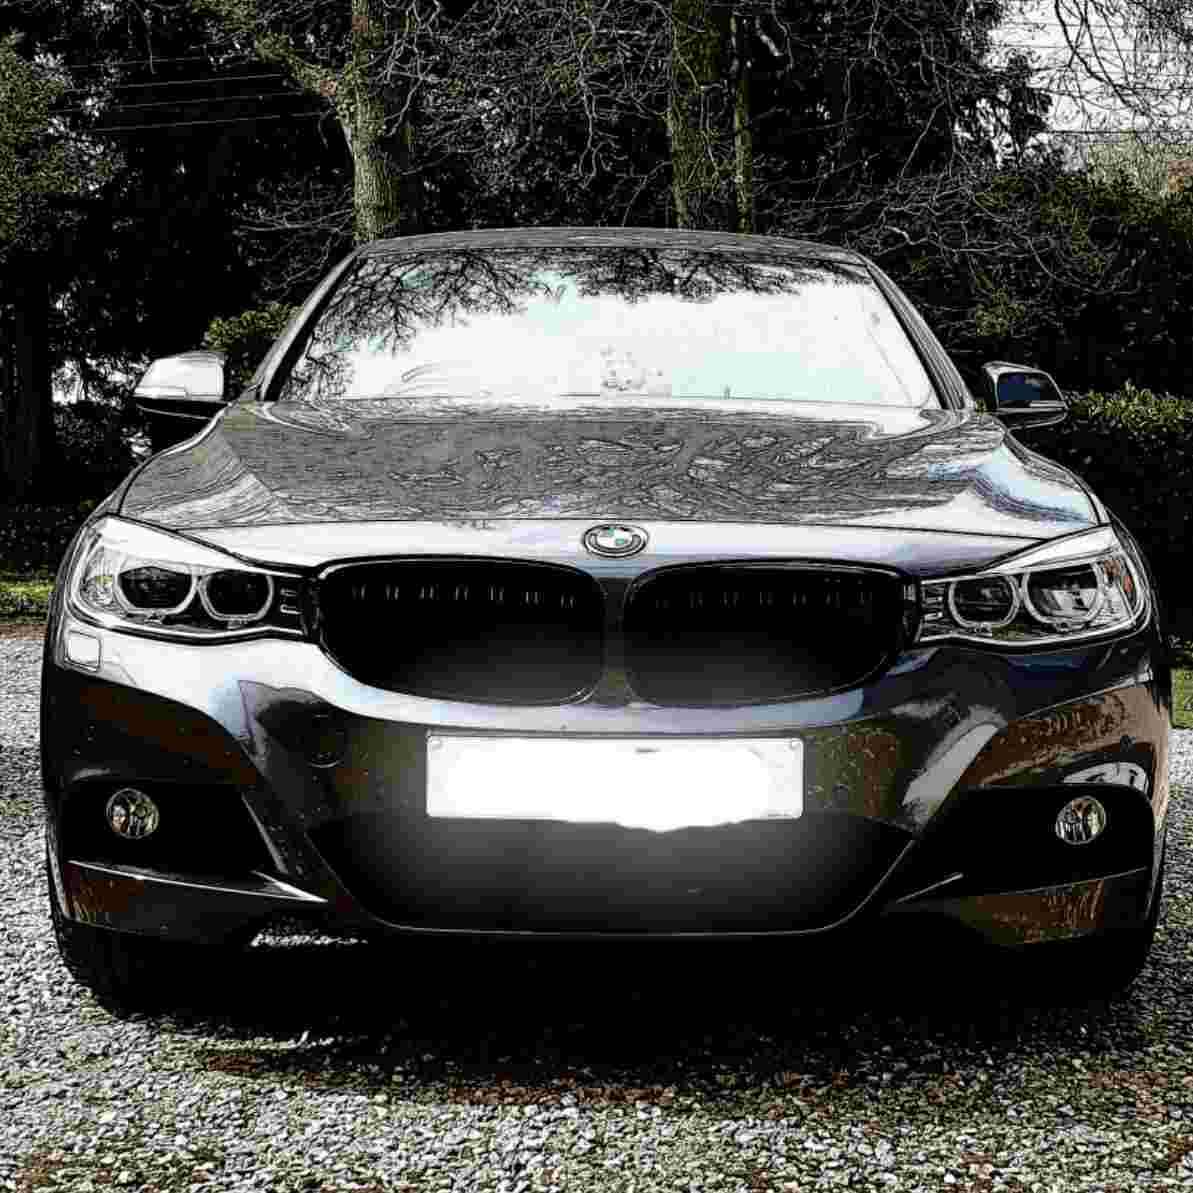 2016 Metallic Dark  Grey BMW 335d GT picture, mods, upgrades